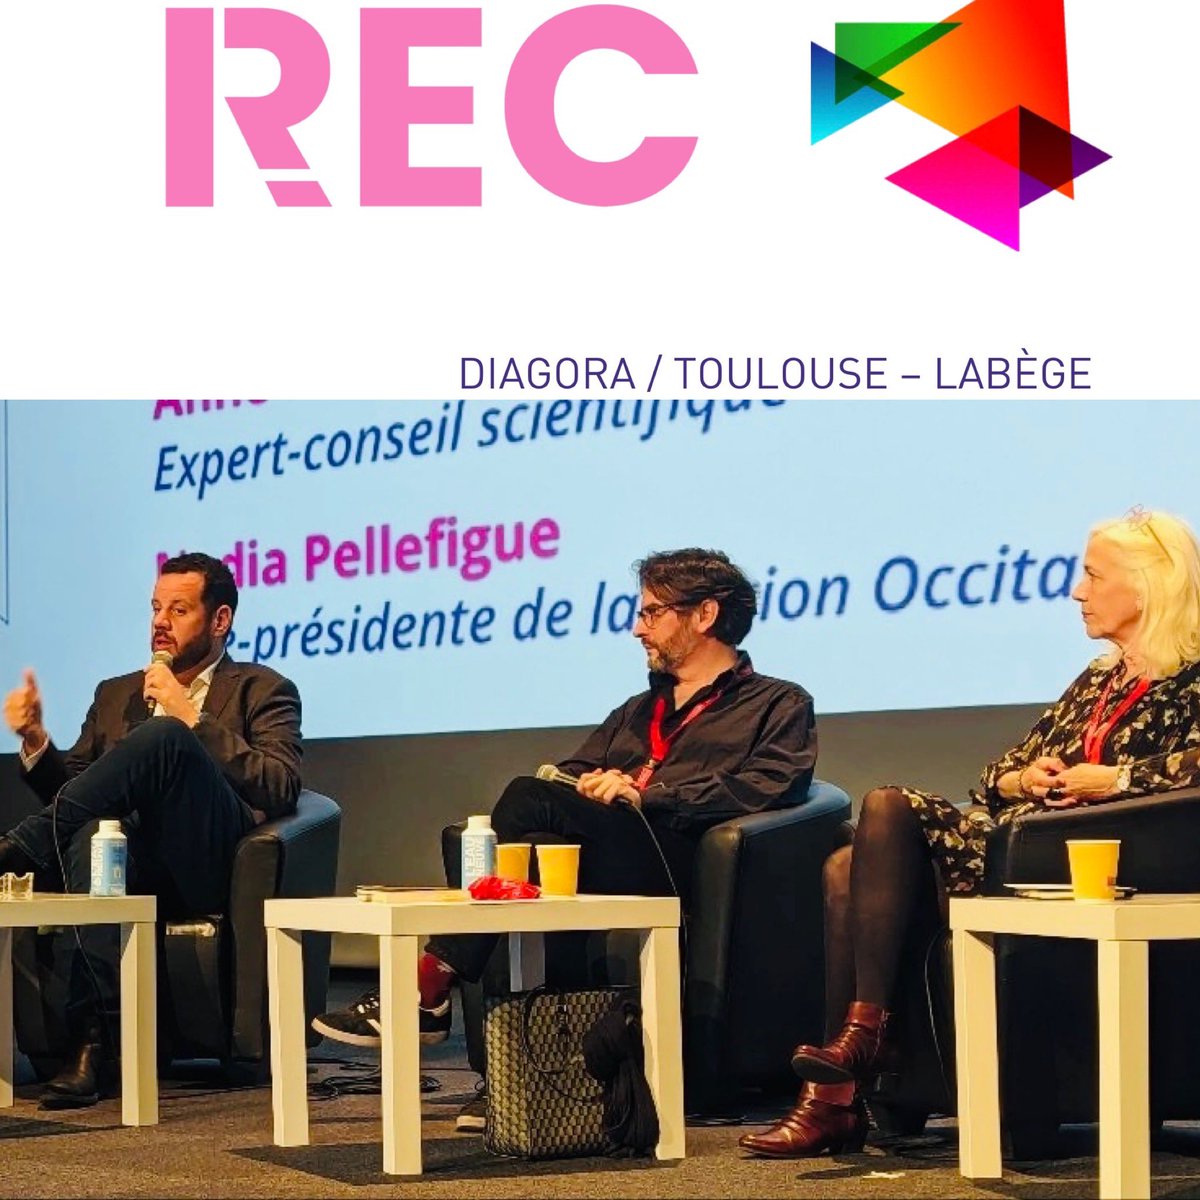 Toujours un plaisir d’échanger aux @RECtlse  autour de la question du choix de l’expertise en politique ! @CaroleDelga #Occitanie